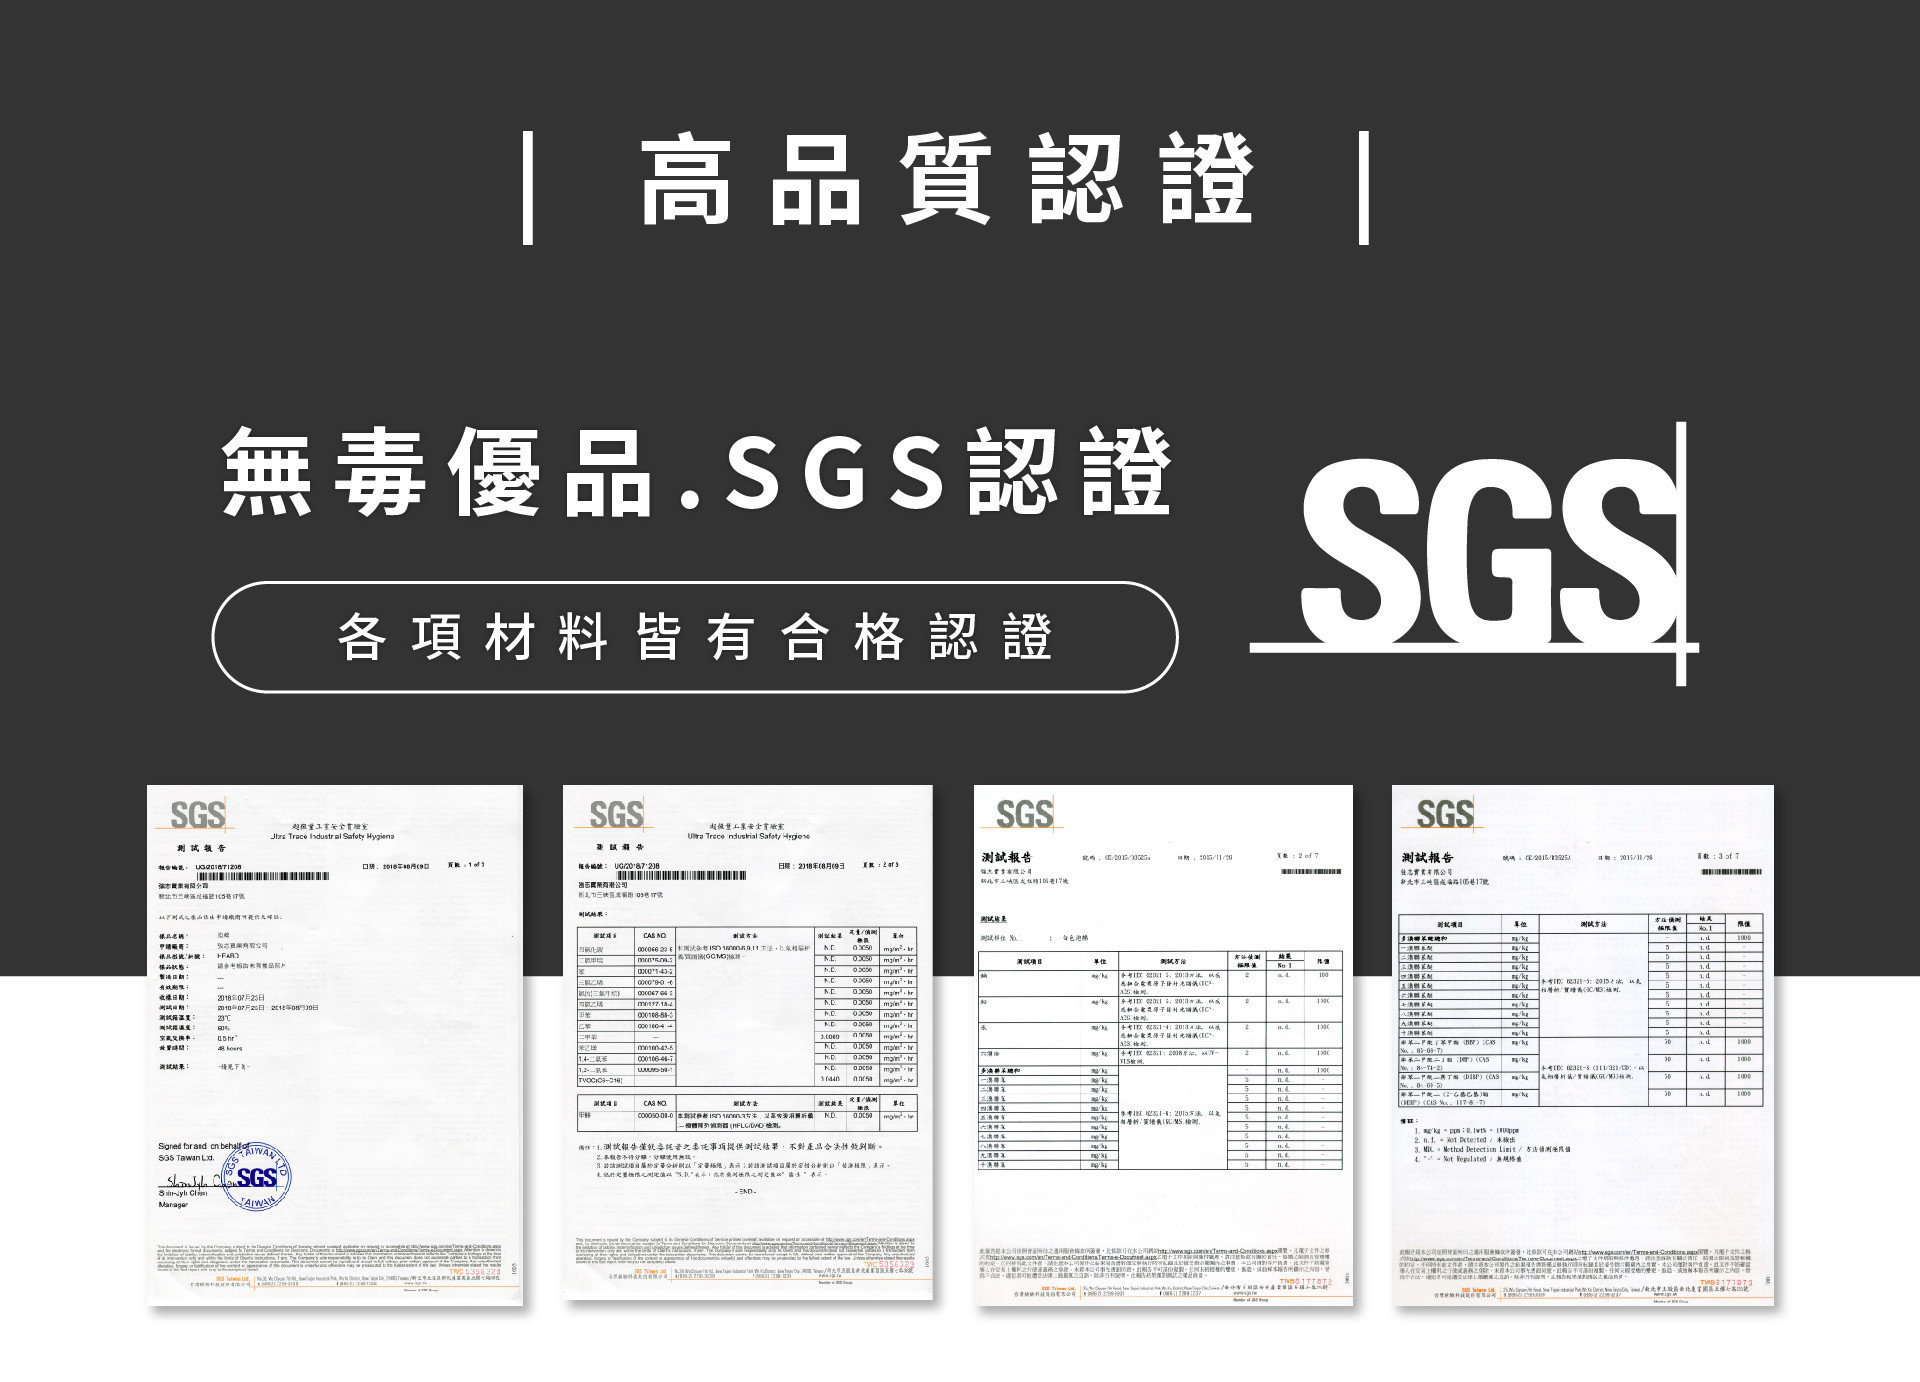 明久產品皆符合國際規範，並通過SGS認證，品質無慮。